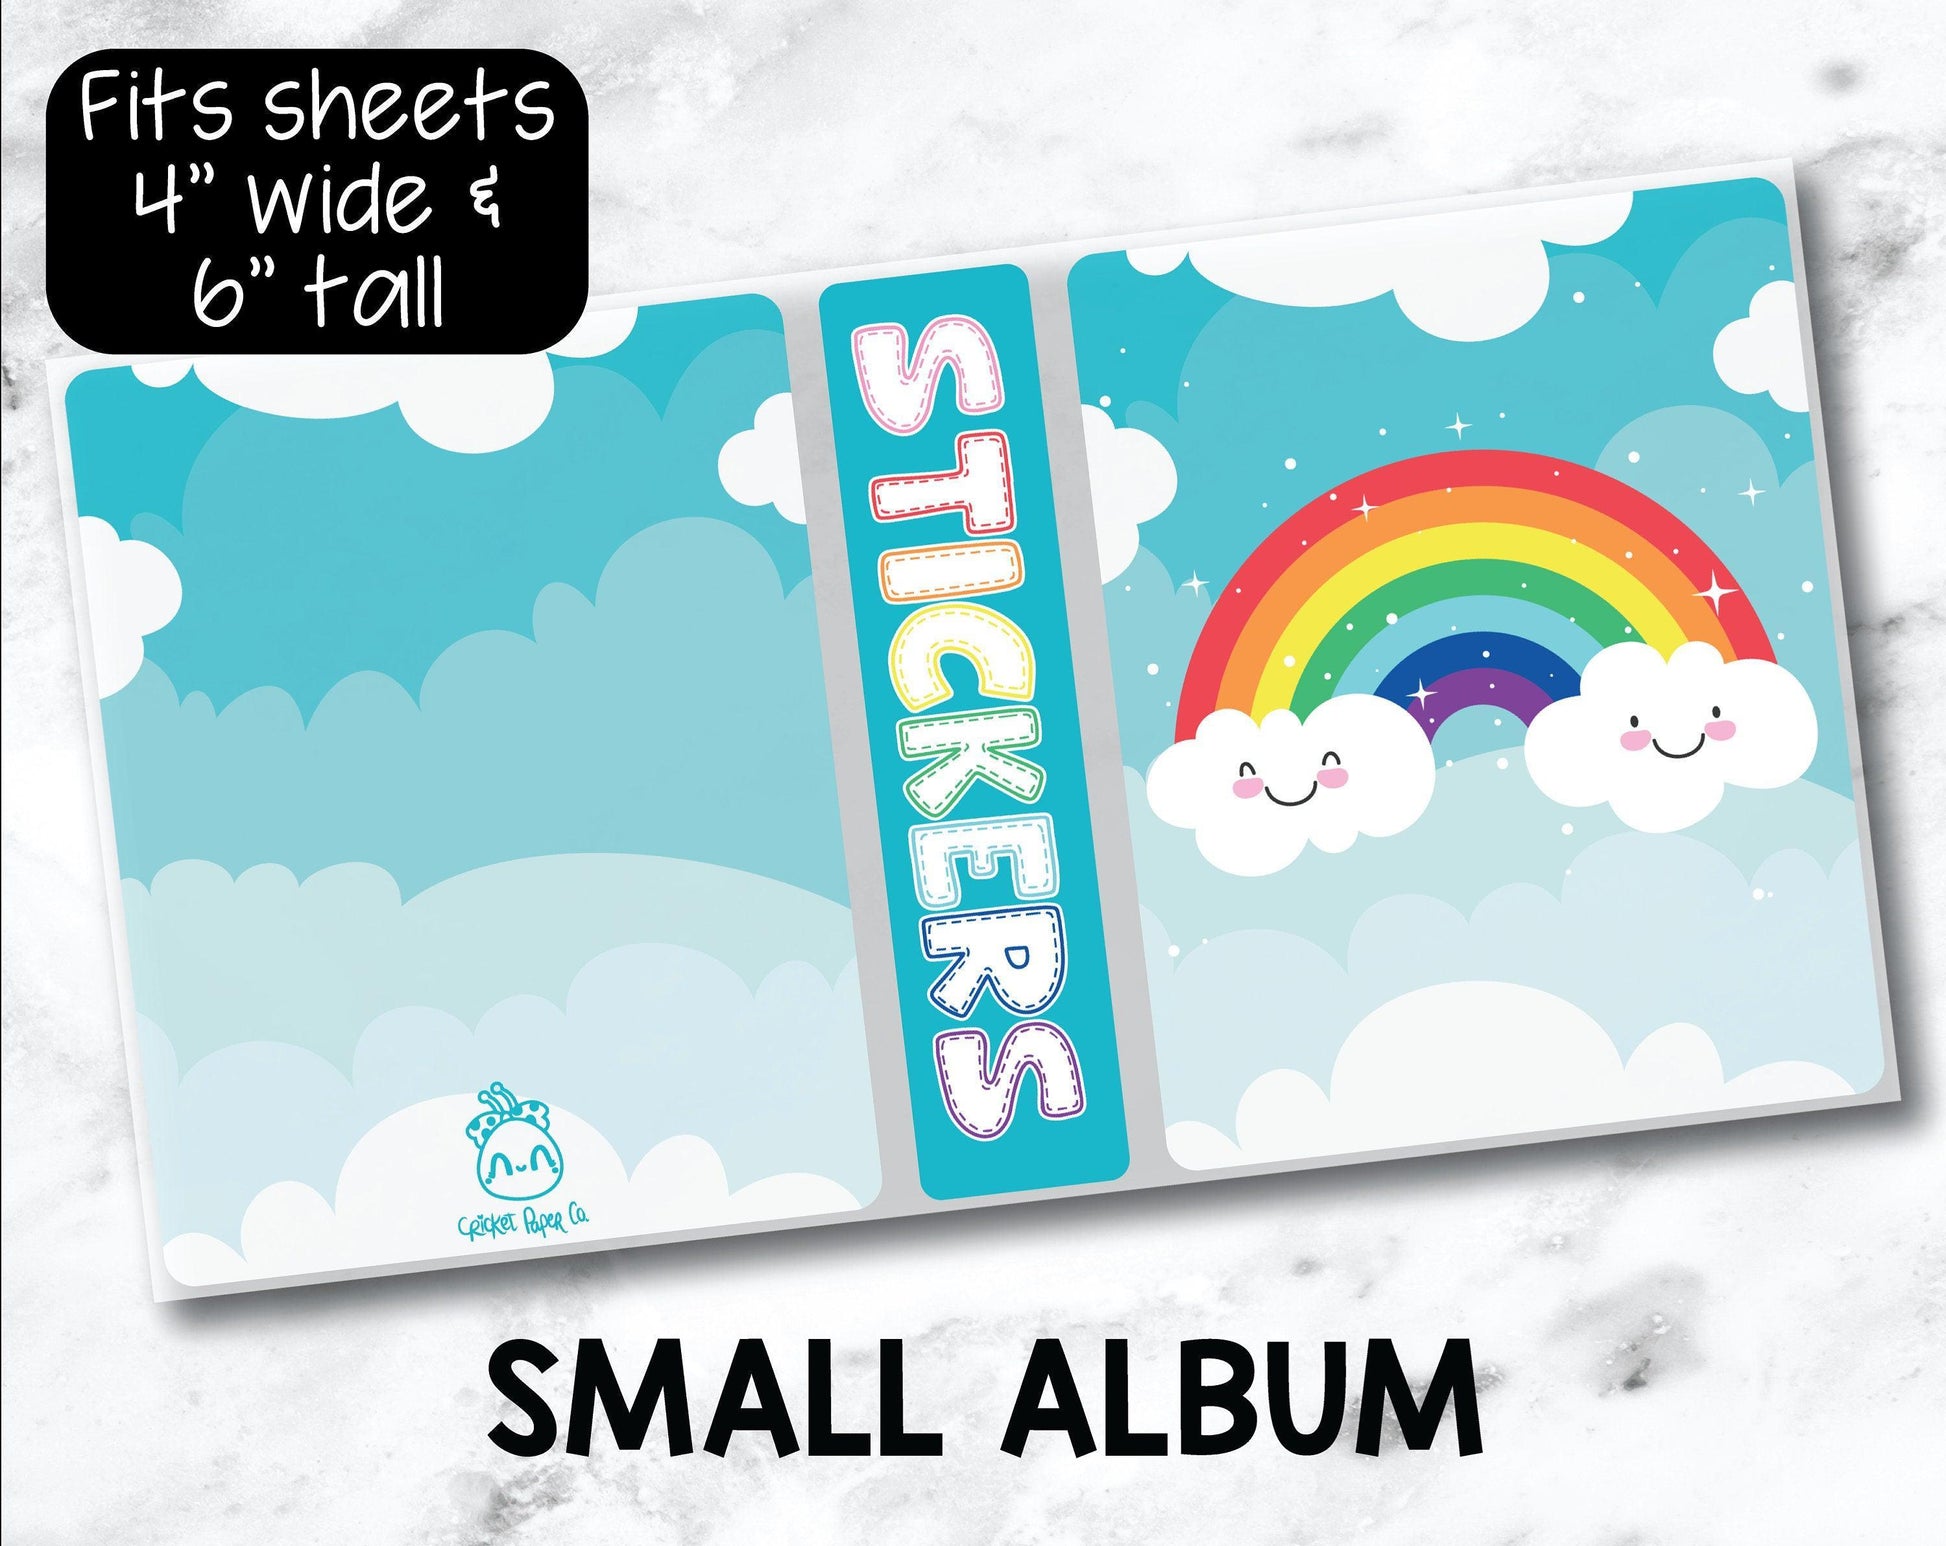 Small Sticker Storage Album - Cute Rainbow-Cricket Paper Co.